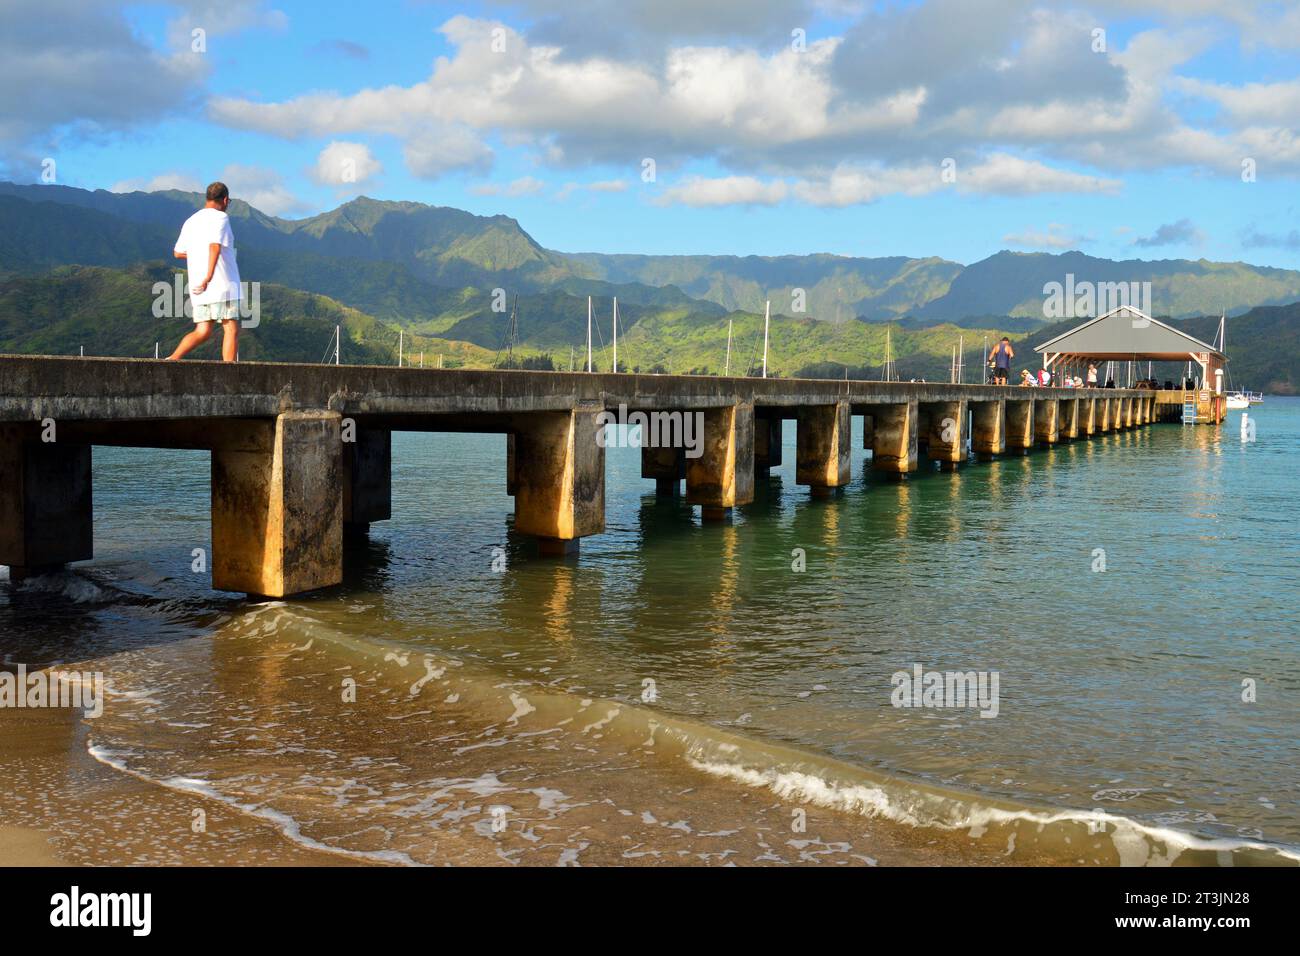 Ein erwachsener Mann spaziert auf dem Pier, der sich in die Hanalei Bay auf der tropischen Insel Kauai, Hawaii, erstreckt Stockfoto